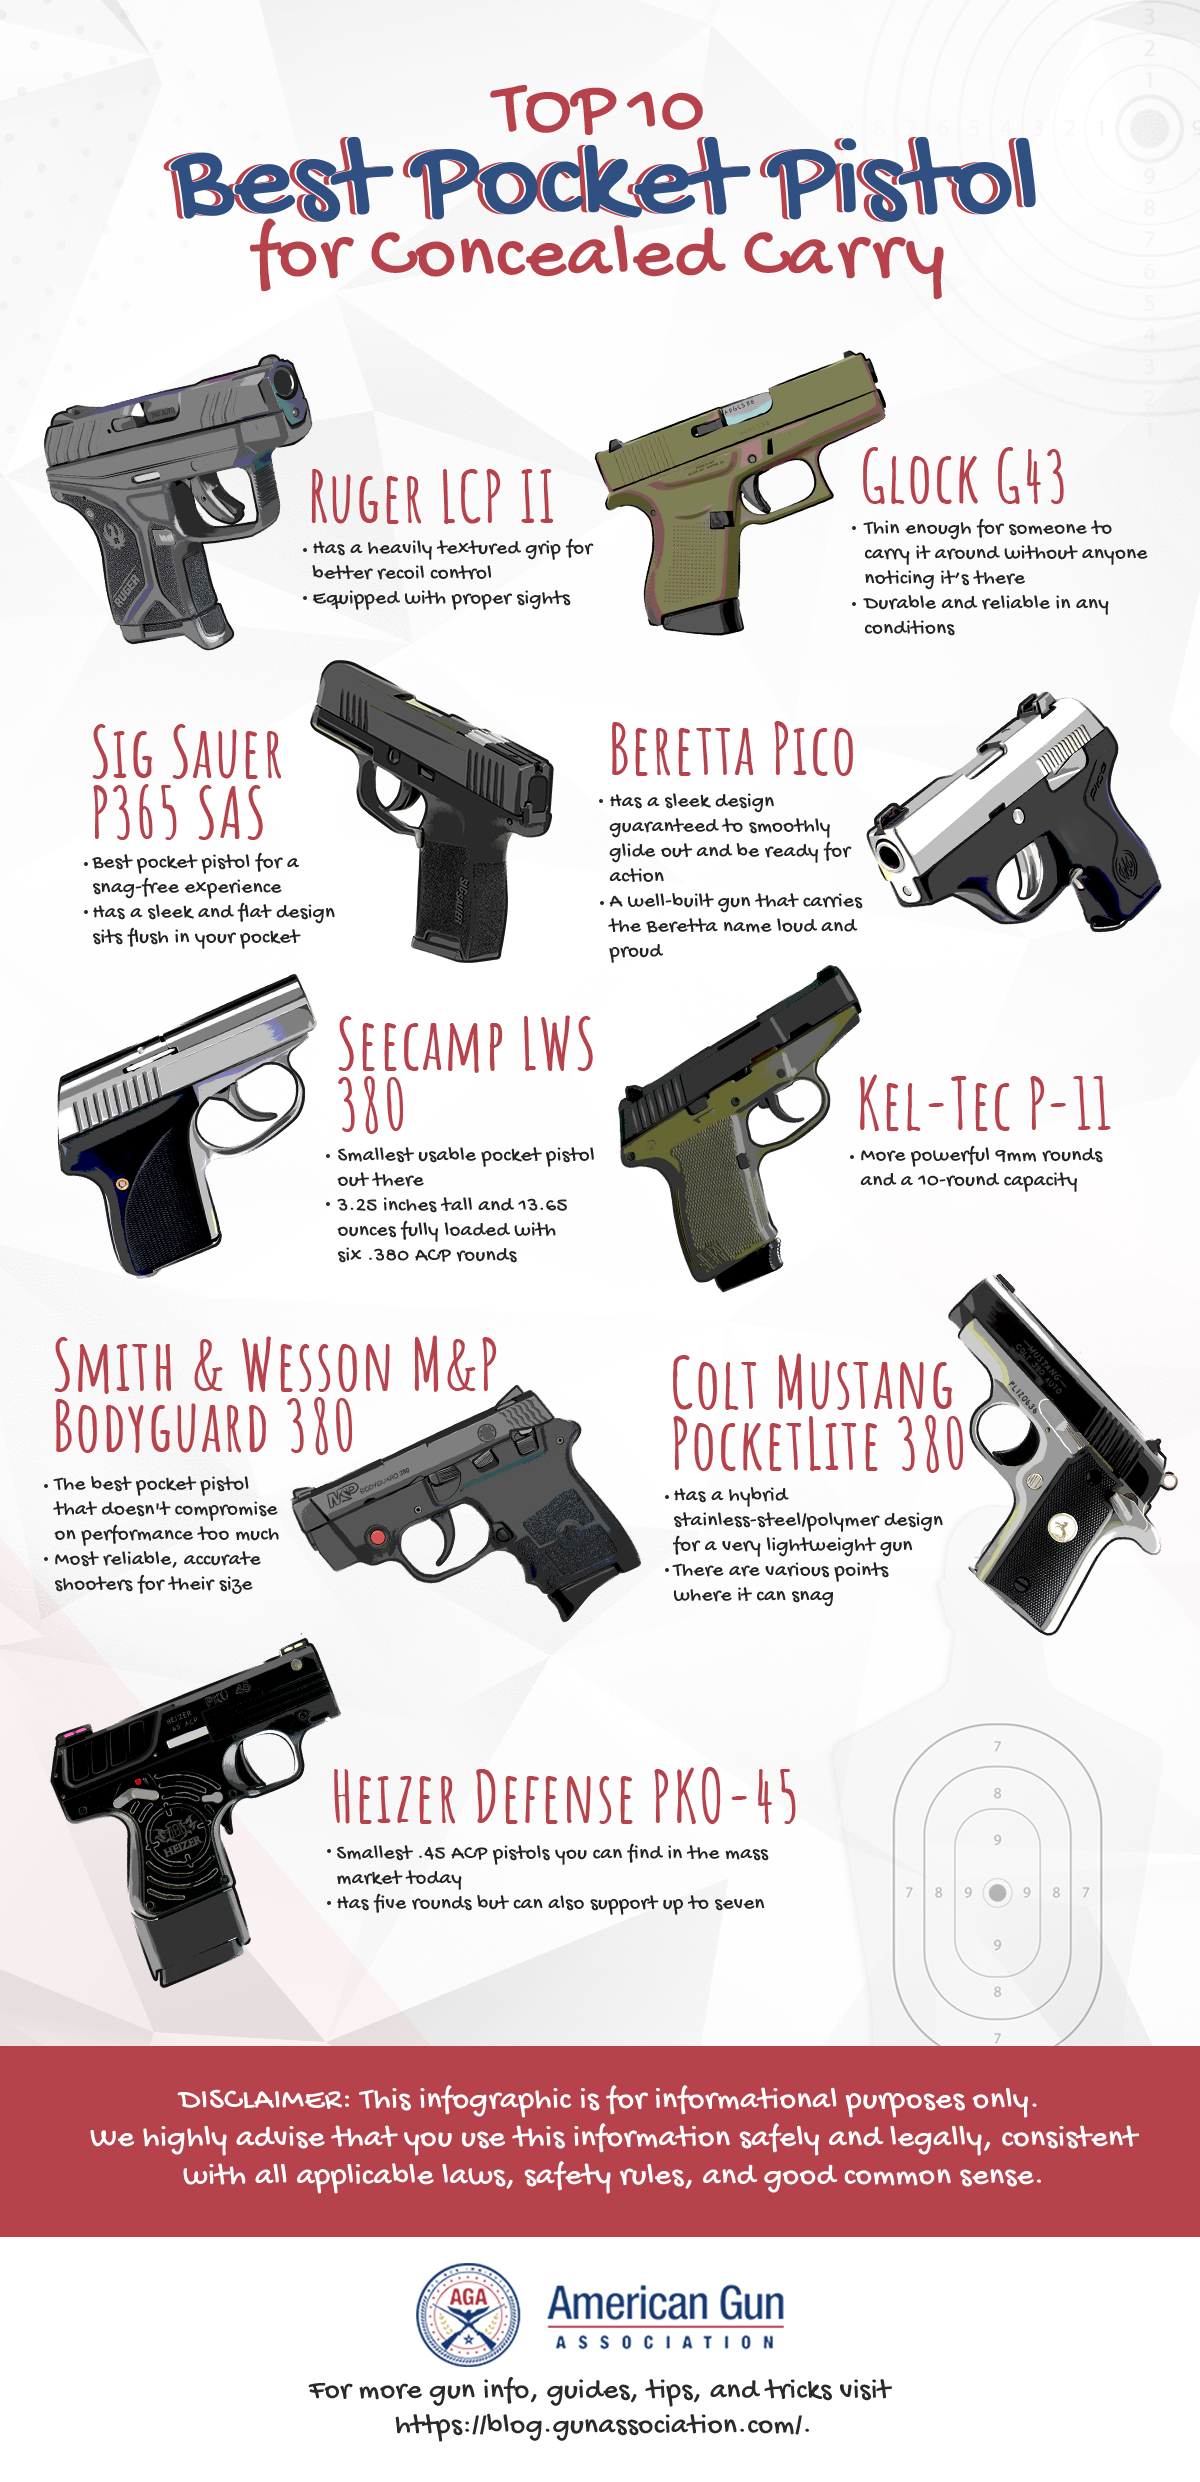 Top 9 Best Pocket Pistol for Concealed Carry